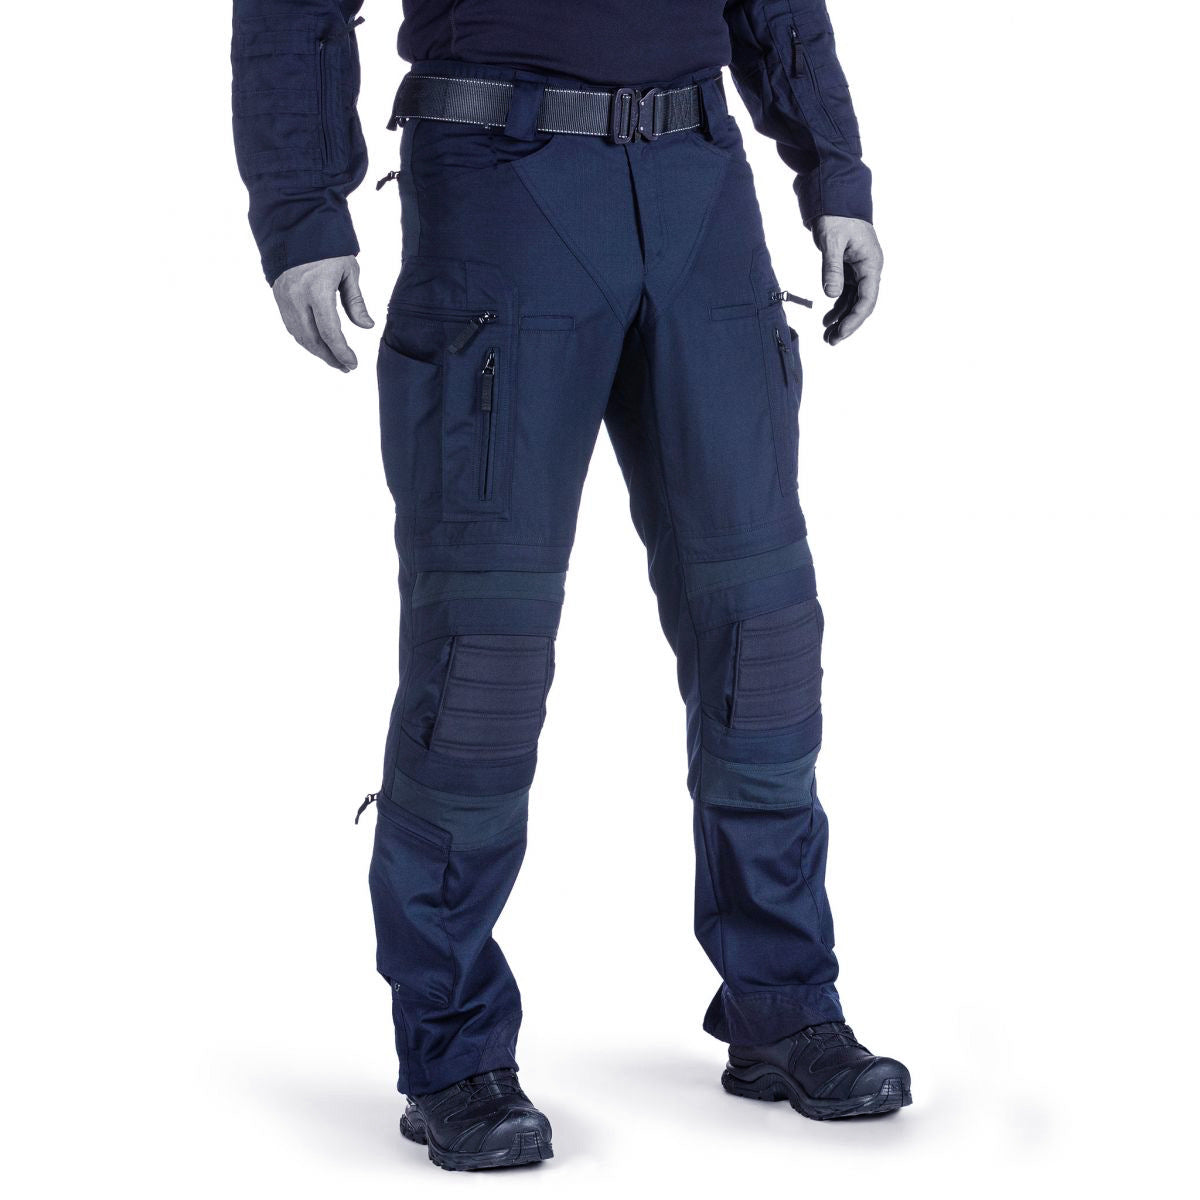 Waterproof And Wear resistant Multi-pocket Pants